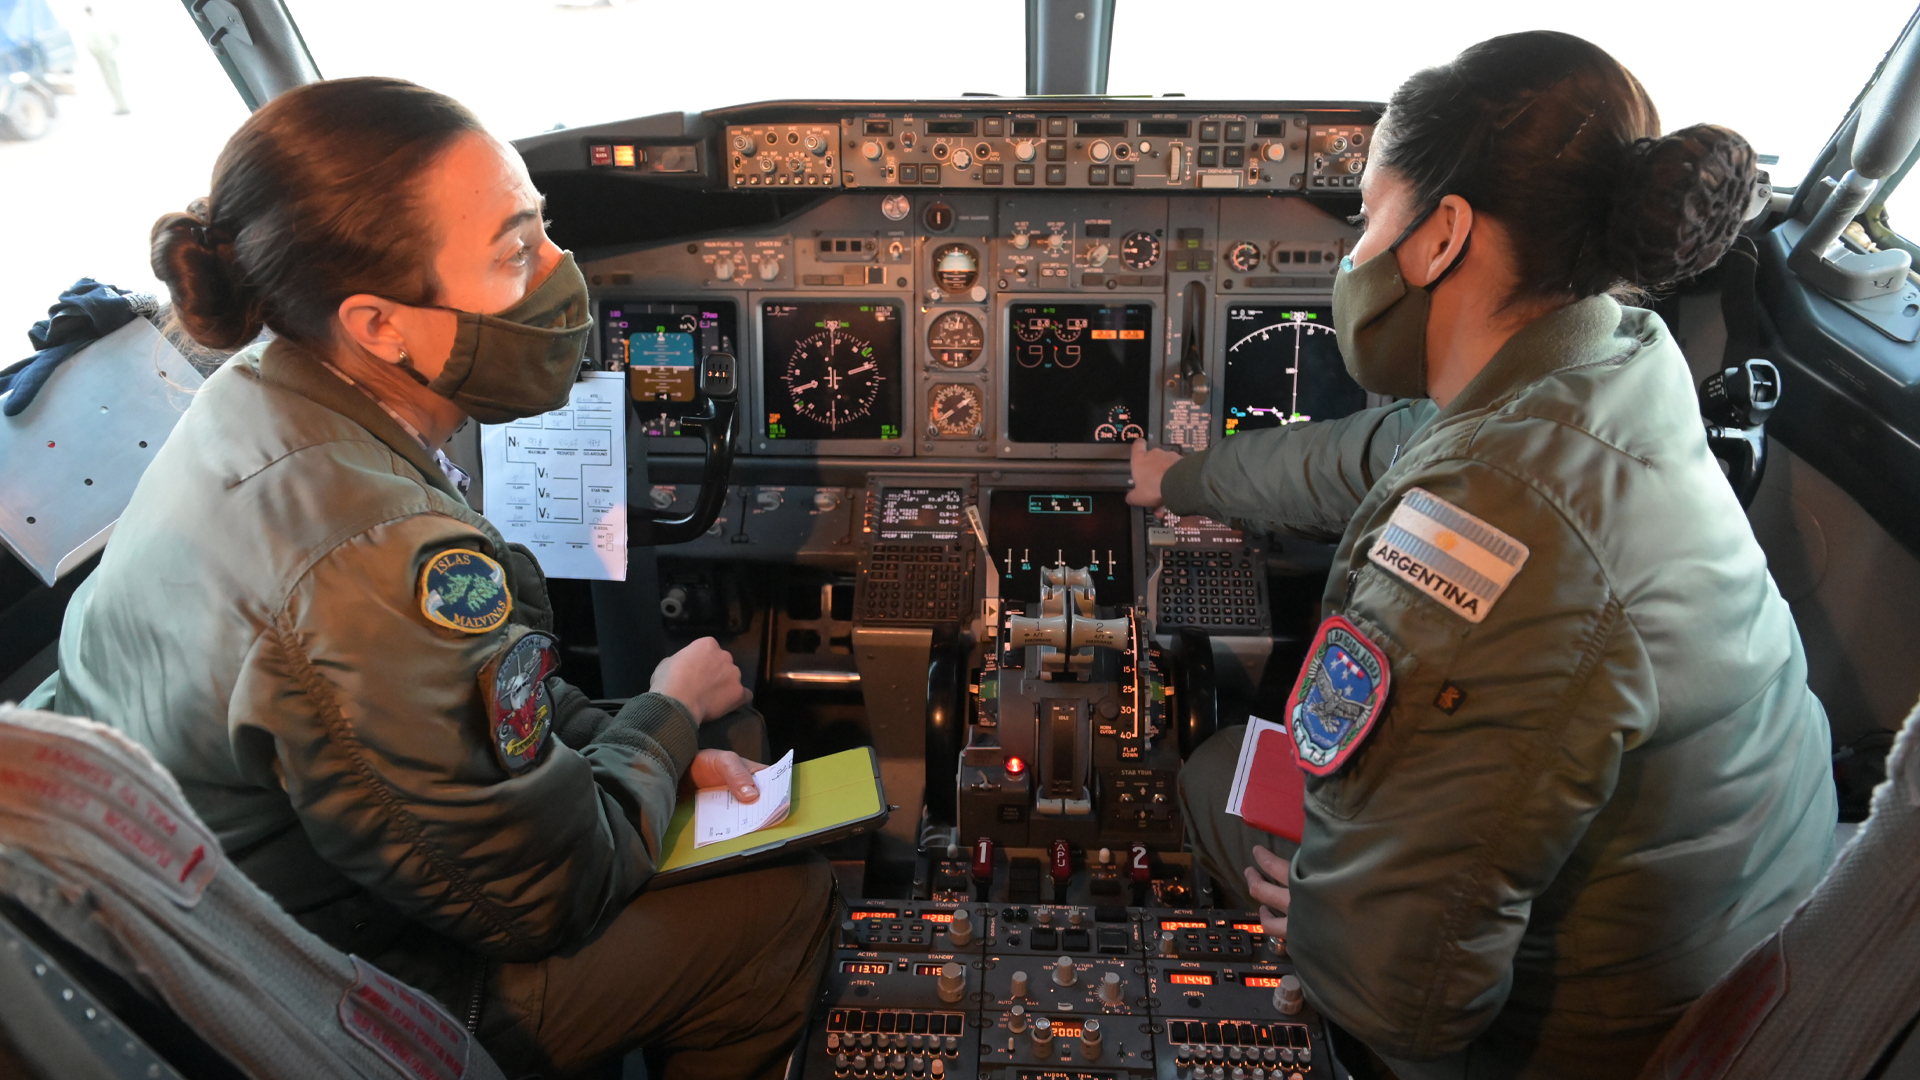 Mujeres en acción: Analía Amaral y Vanesa Farías en la cabina del nuevo Boeing 737 "Islas Malvinas". Foto: Fernando Calzada.